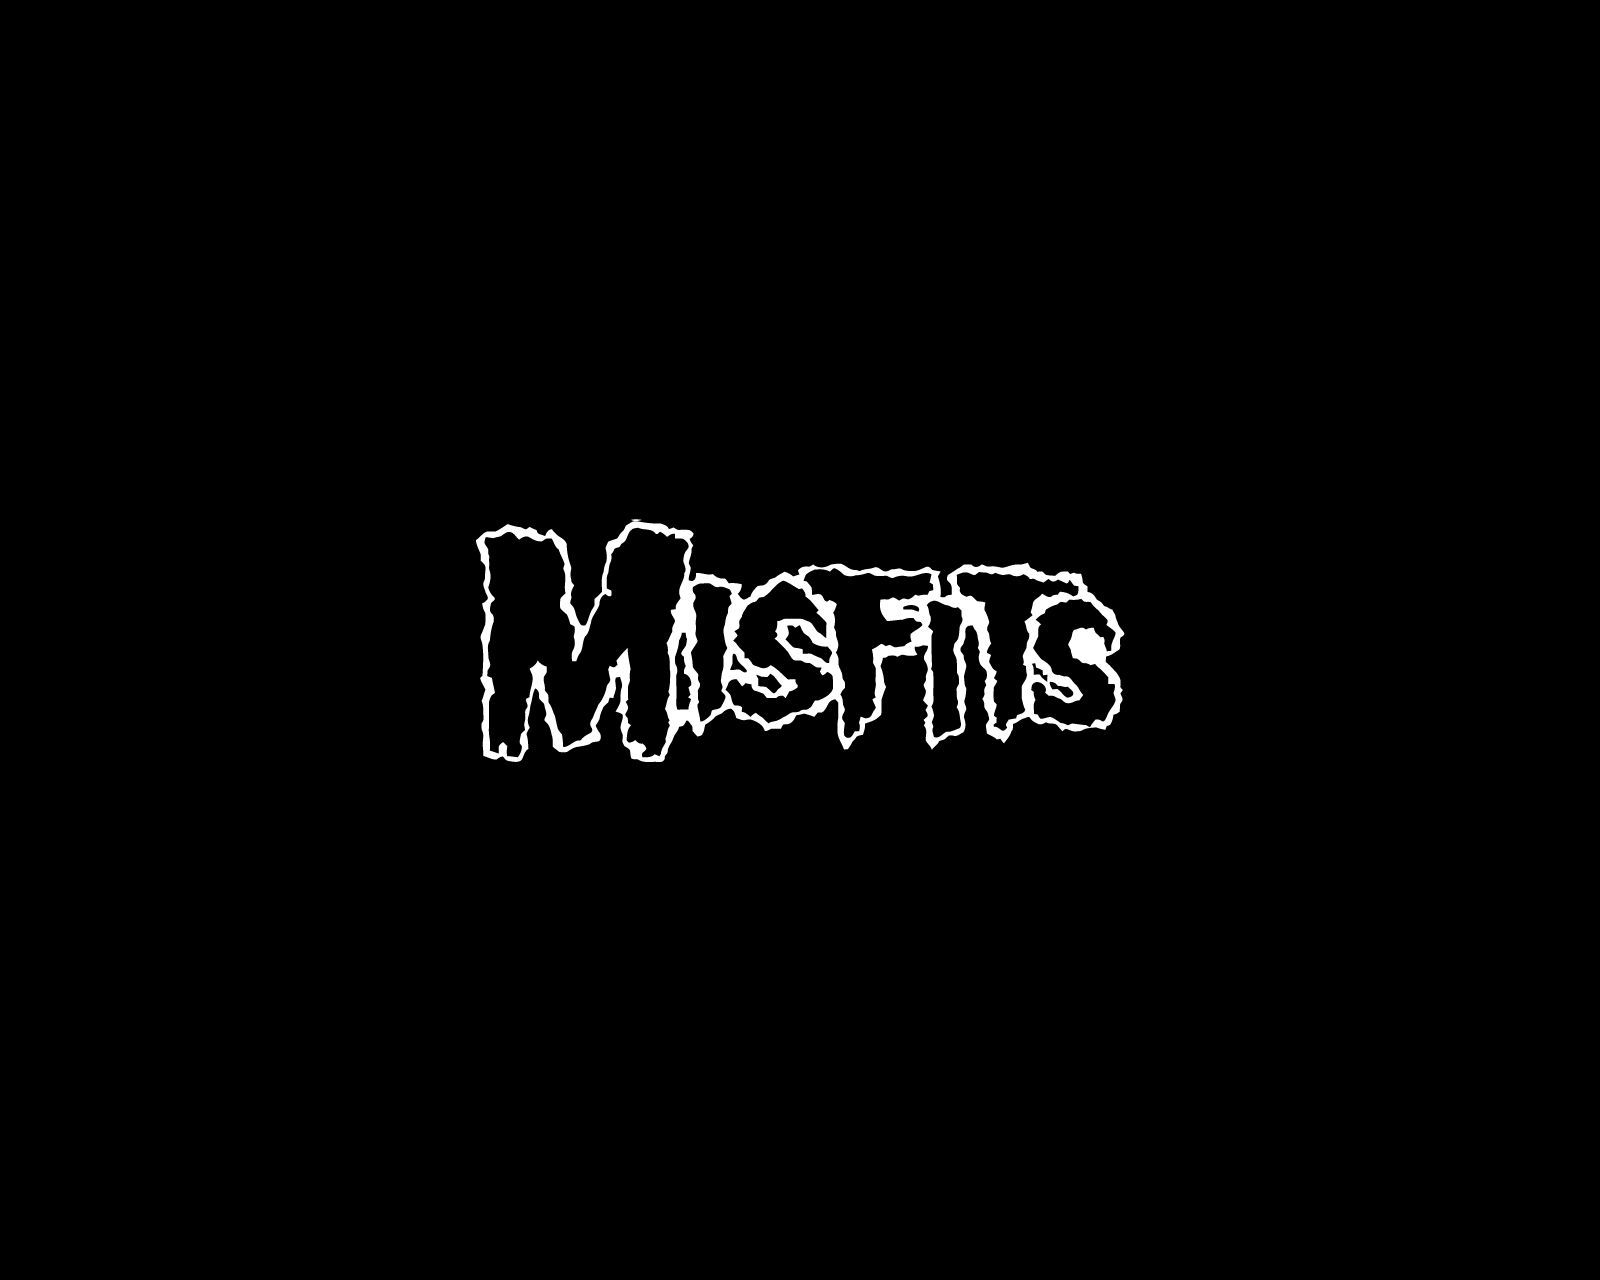 Misfits logo and wallpaper Band logos - Rock band logos, metal